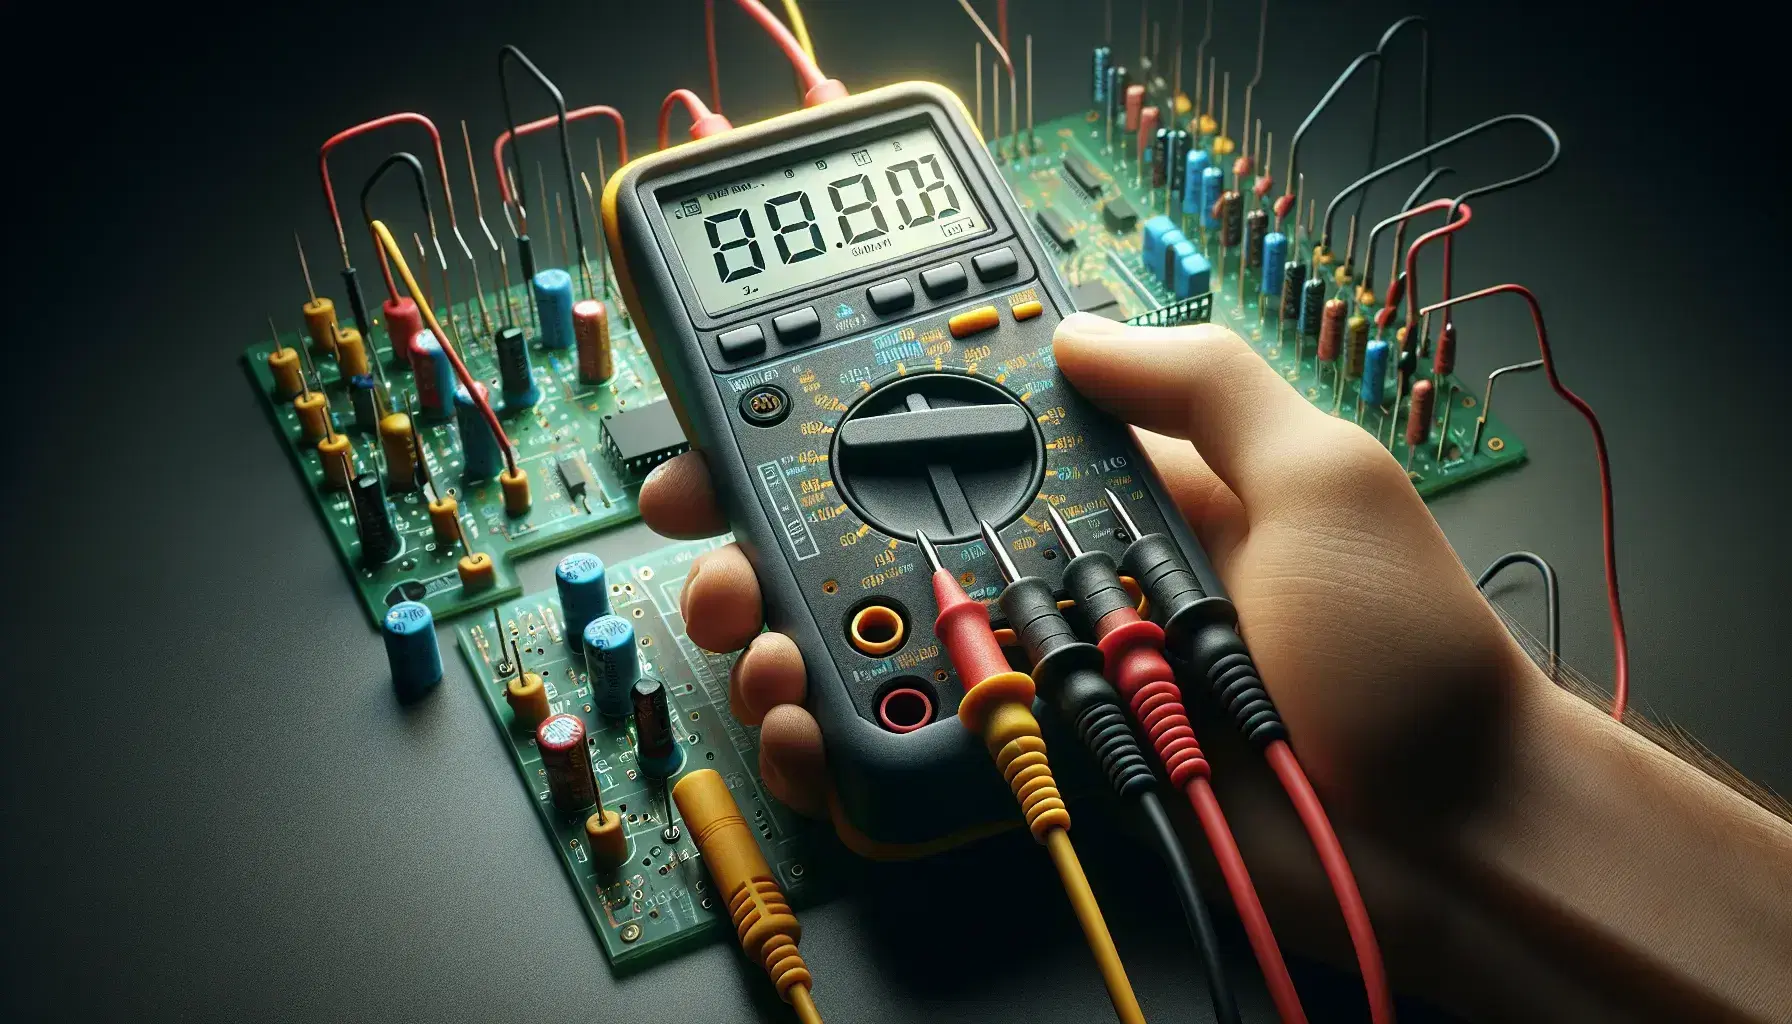 Mano sosteniendo un multímetro digital con cables de prueba sobre una placa de circuito impreso con resistencias y capacitores, destacando la medición y el diagnóstico electrónico.